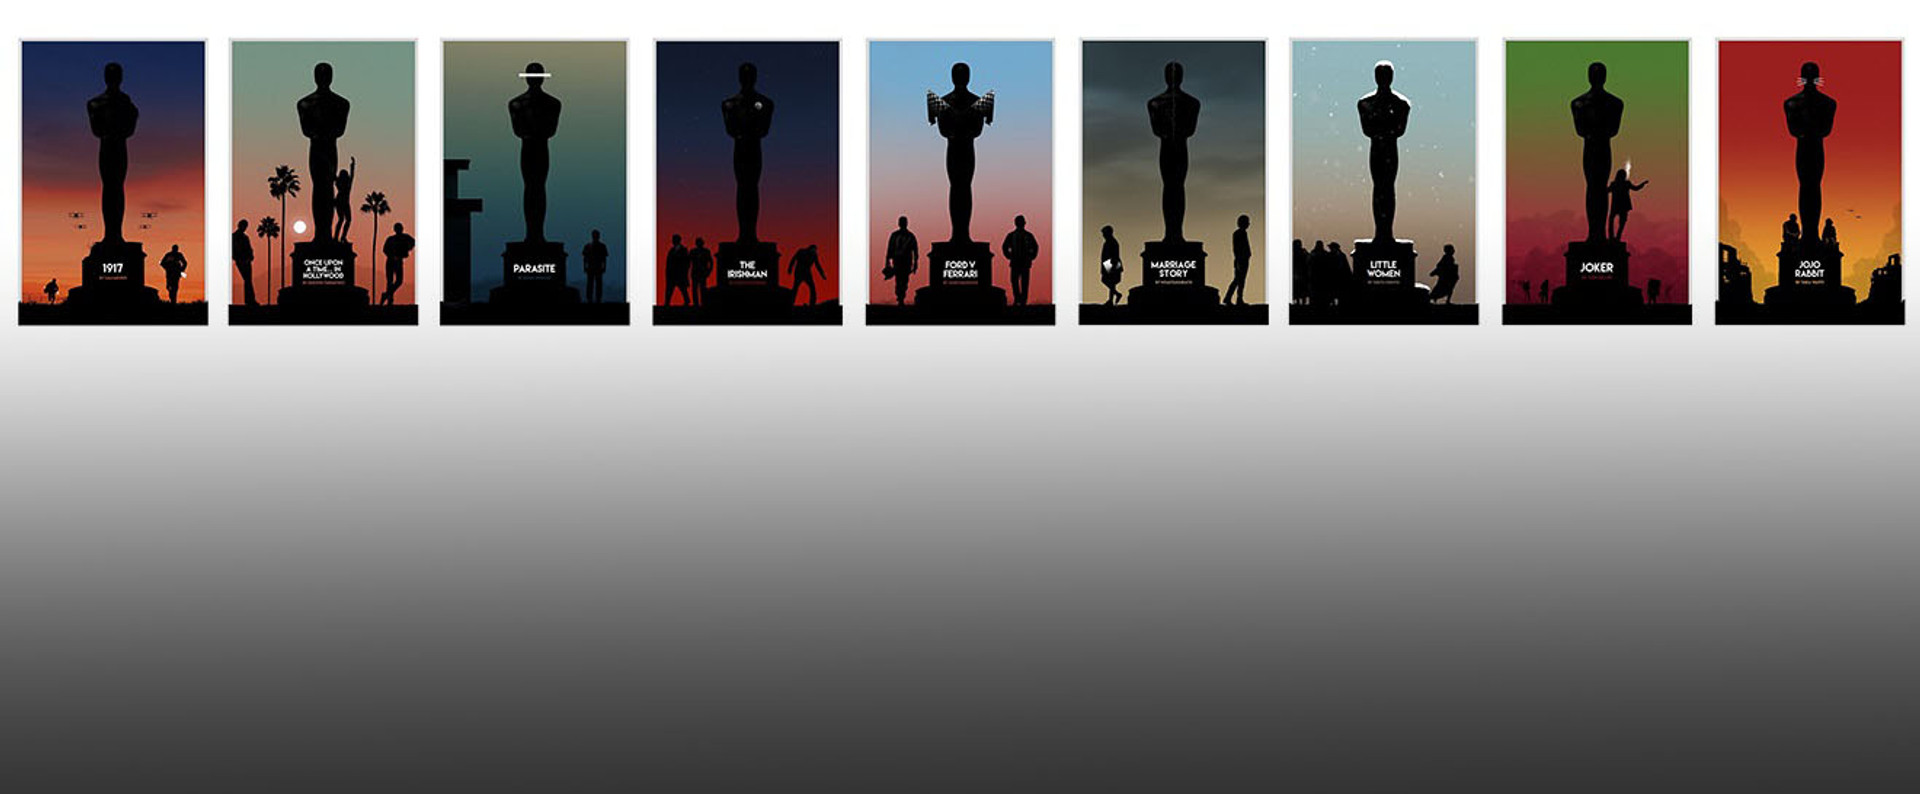 Який фільм отримає Оскар 2020? Аналізуємо шанси 9 найкращих стрічок 2019 року